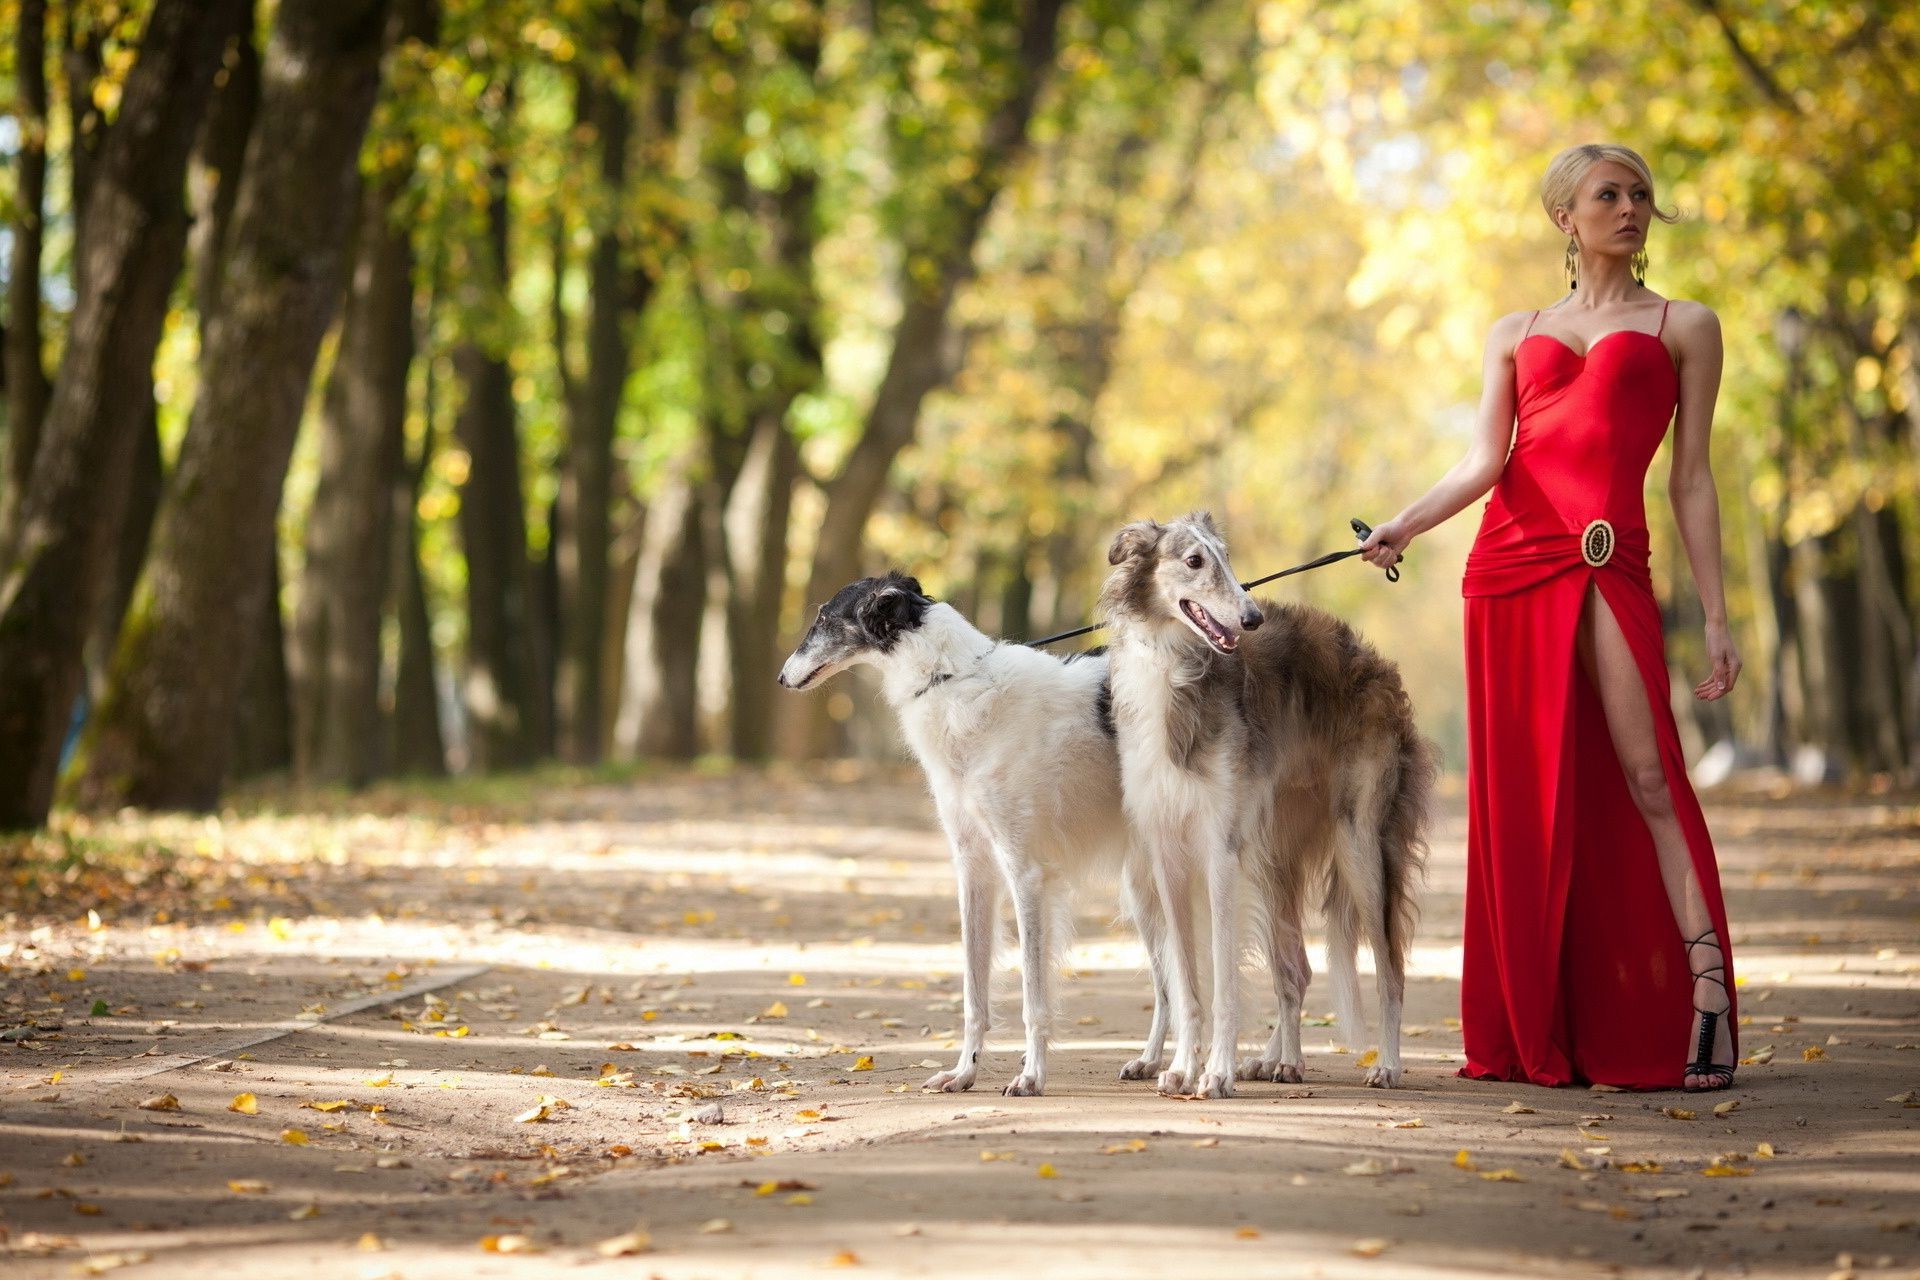 Девушка С Собакой Фото На Белом